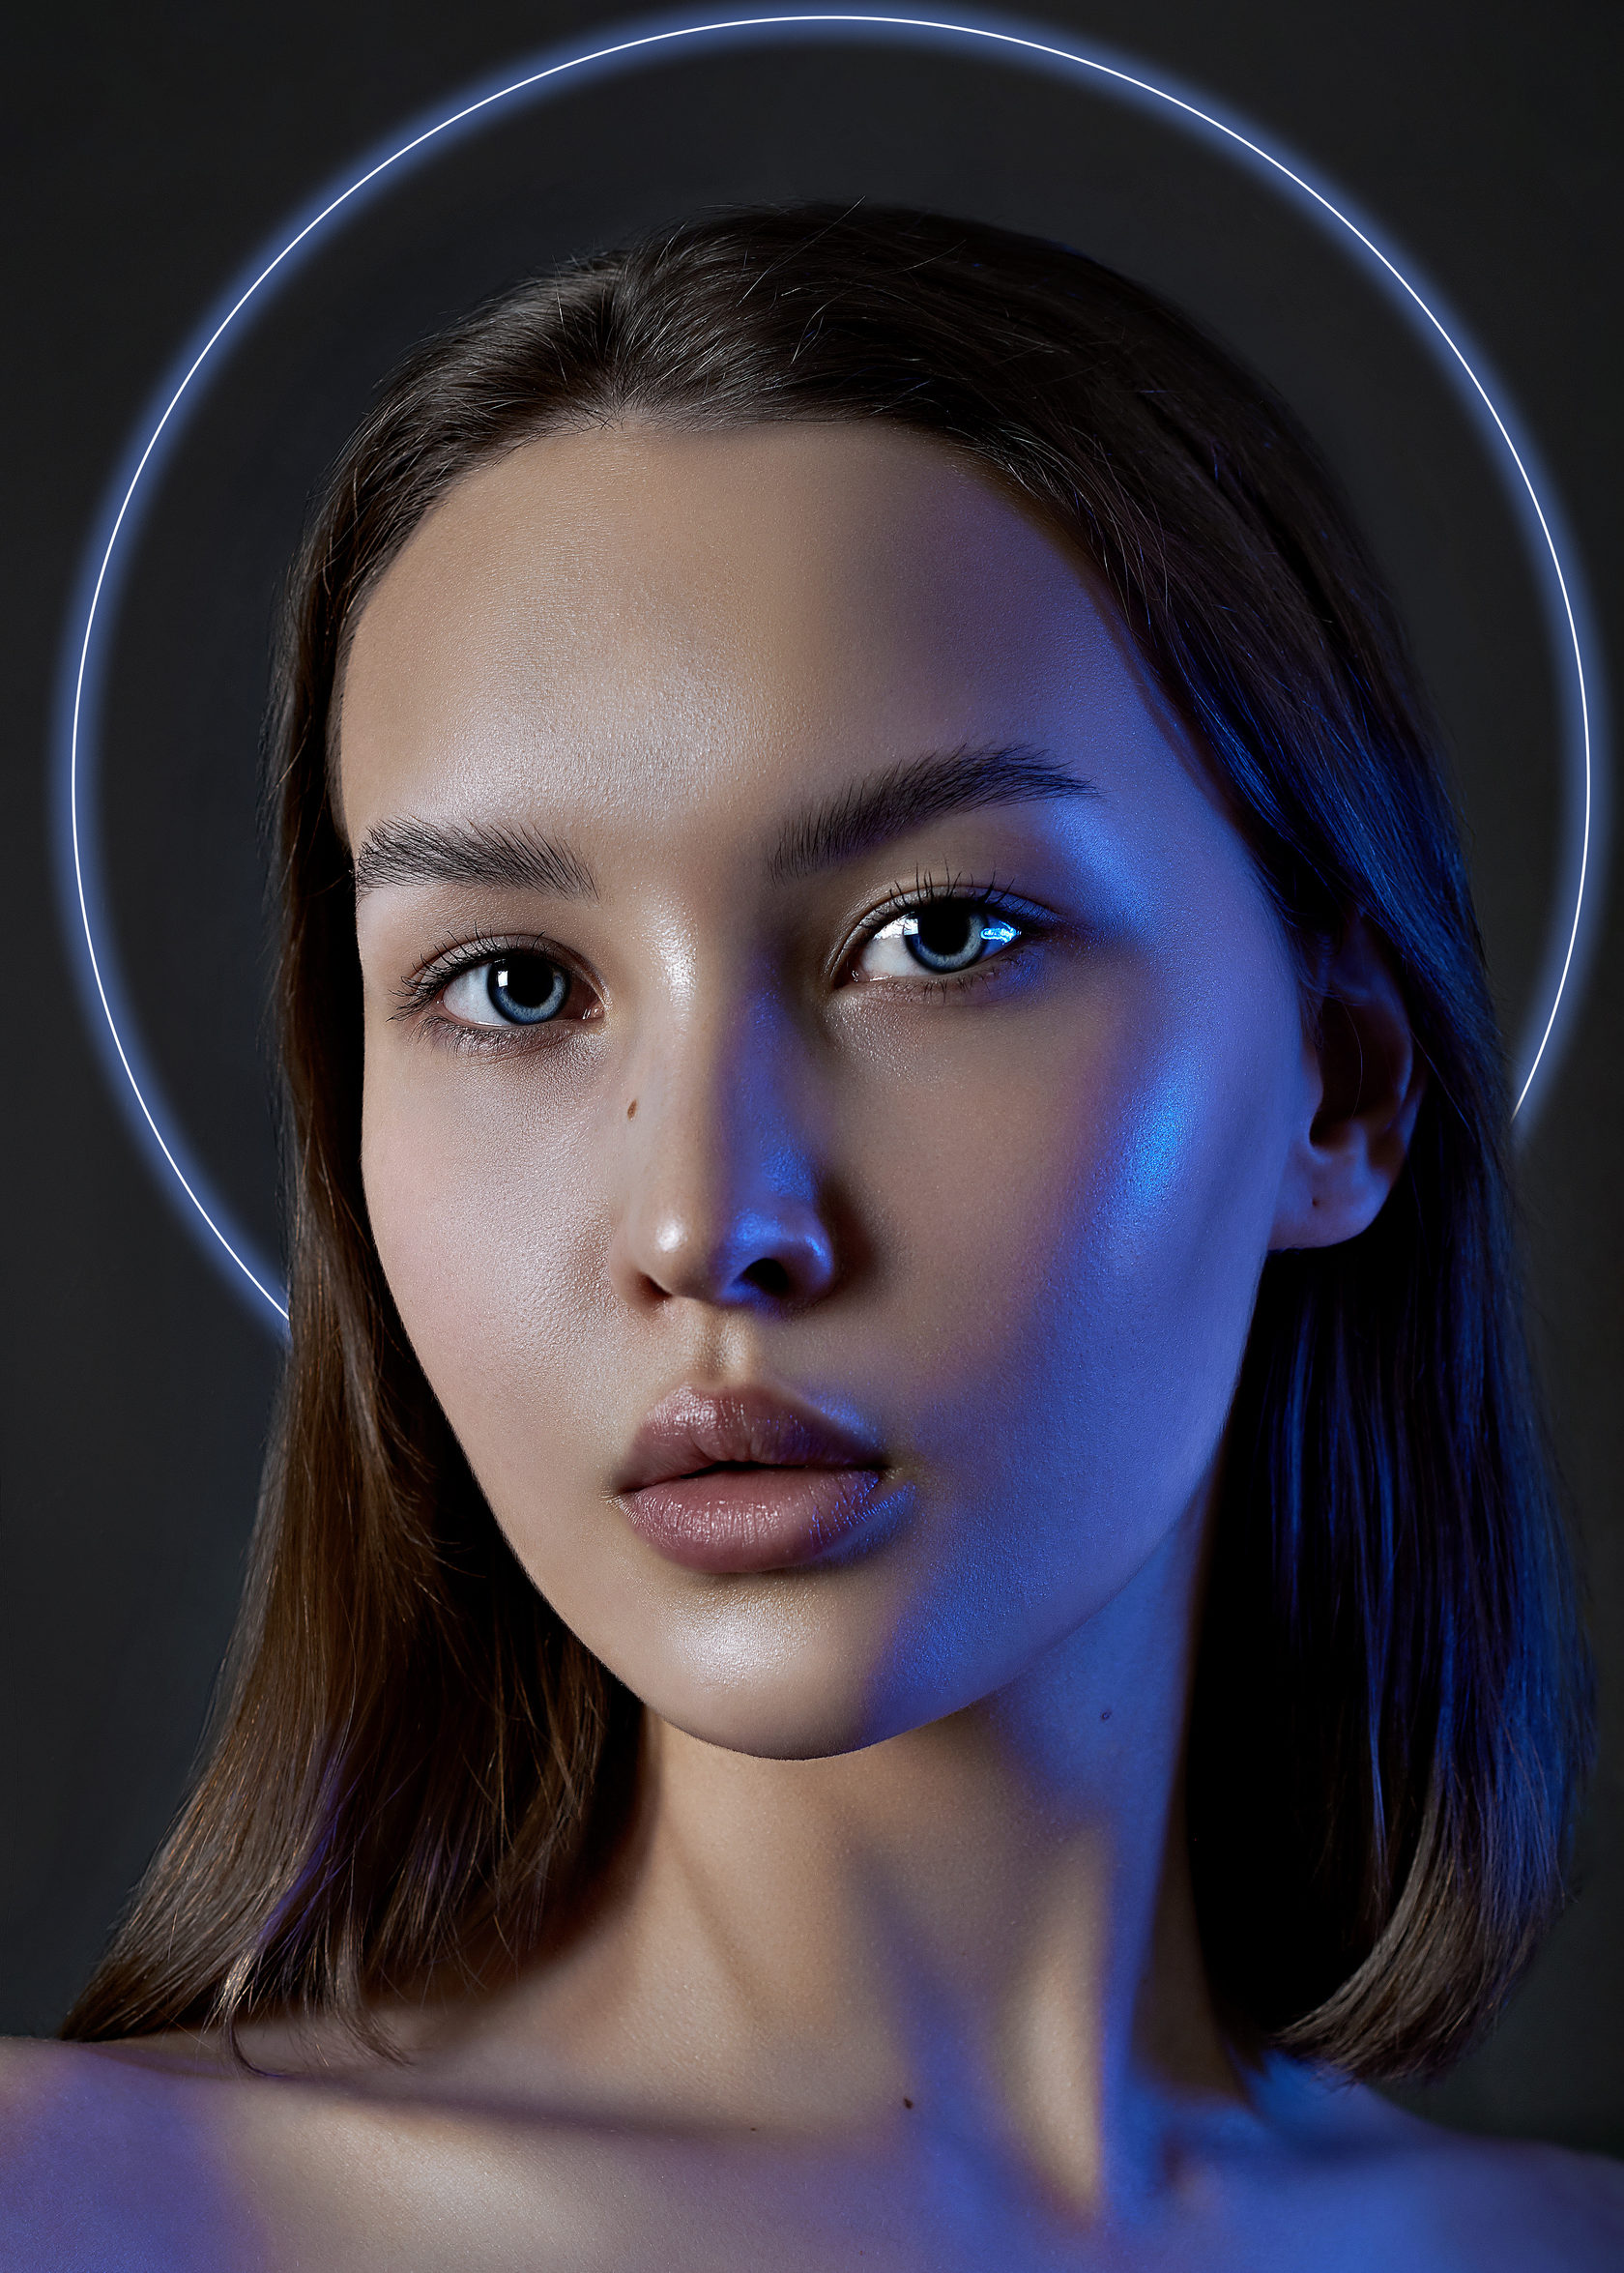 Tg models. Реалистичная цветокоррекция. Цветокоррекция для аватарки. Female model Telegram.